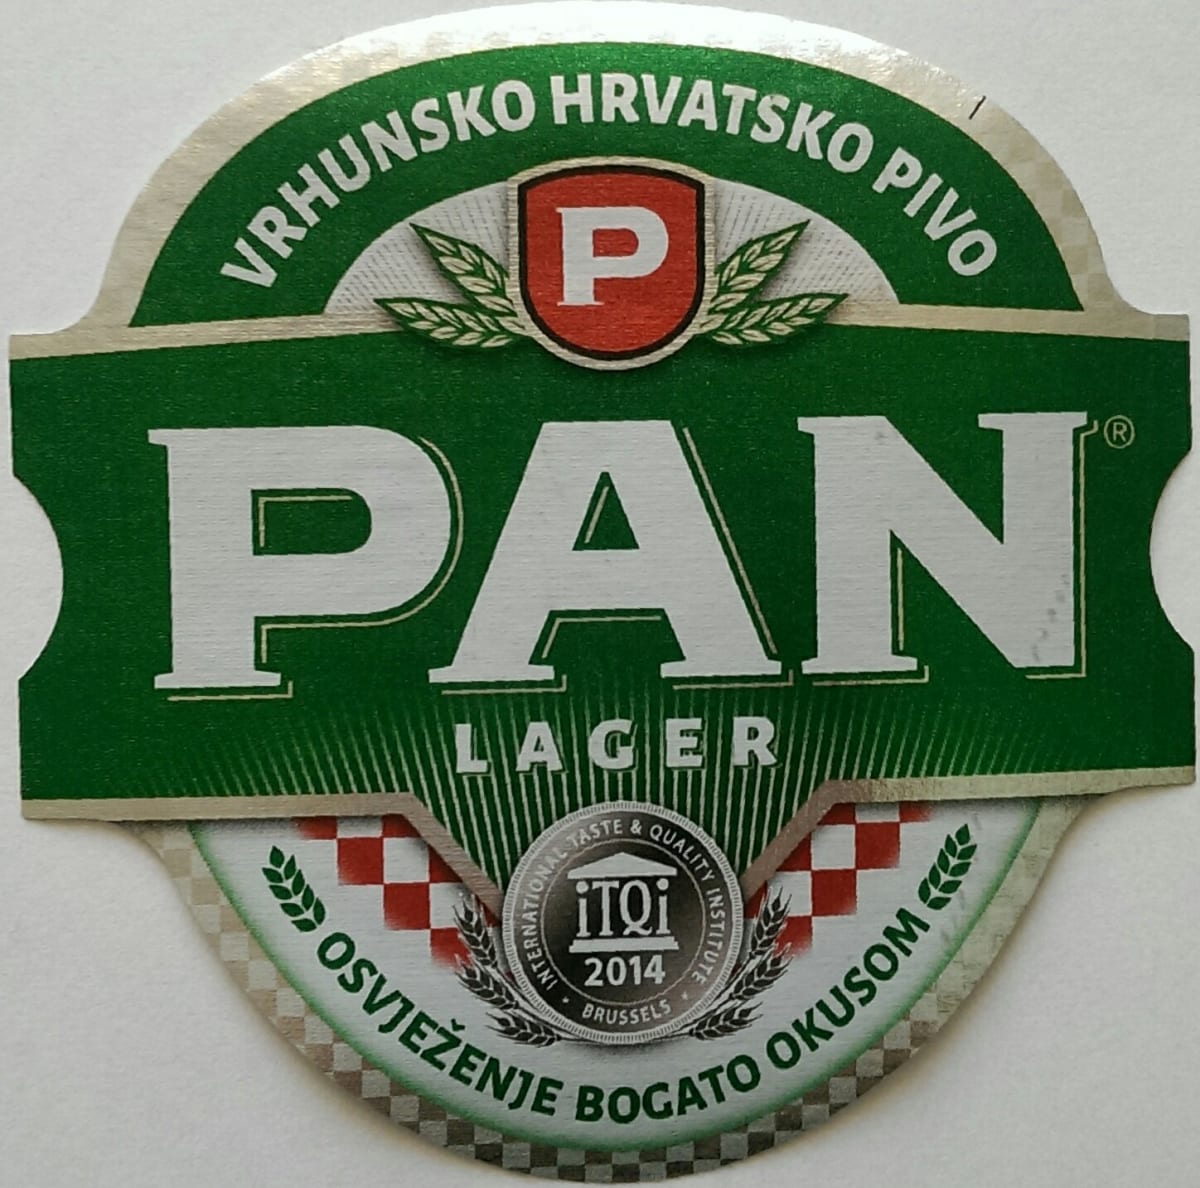 Pan Lager